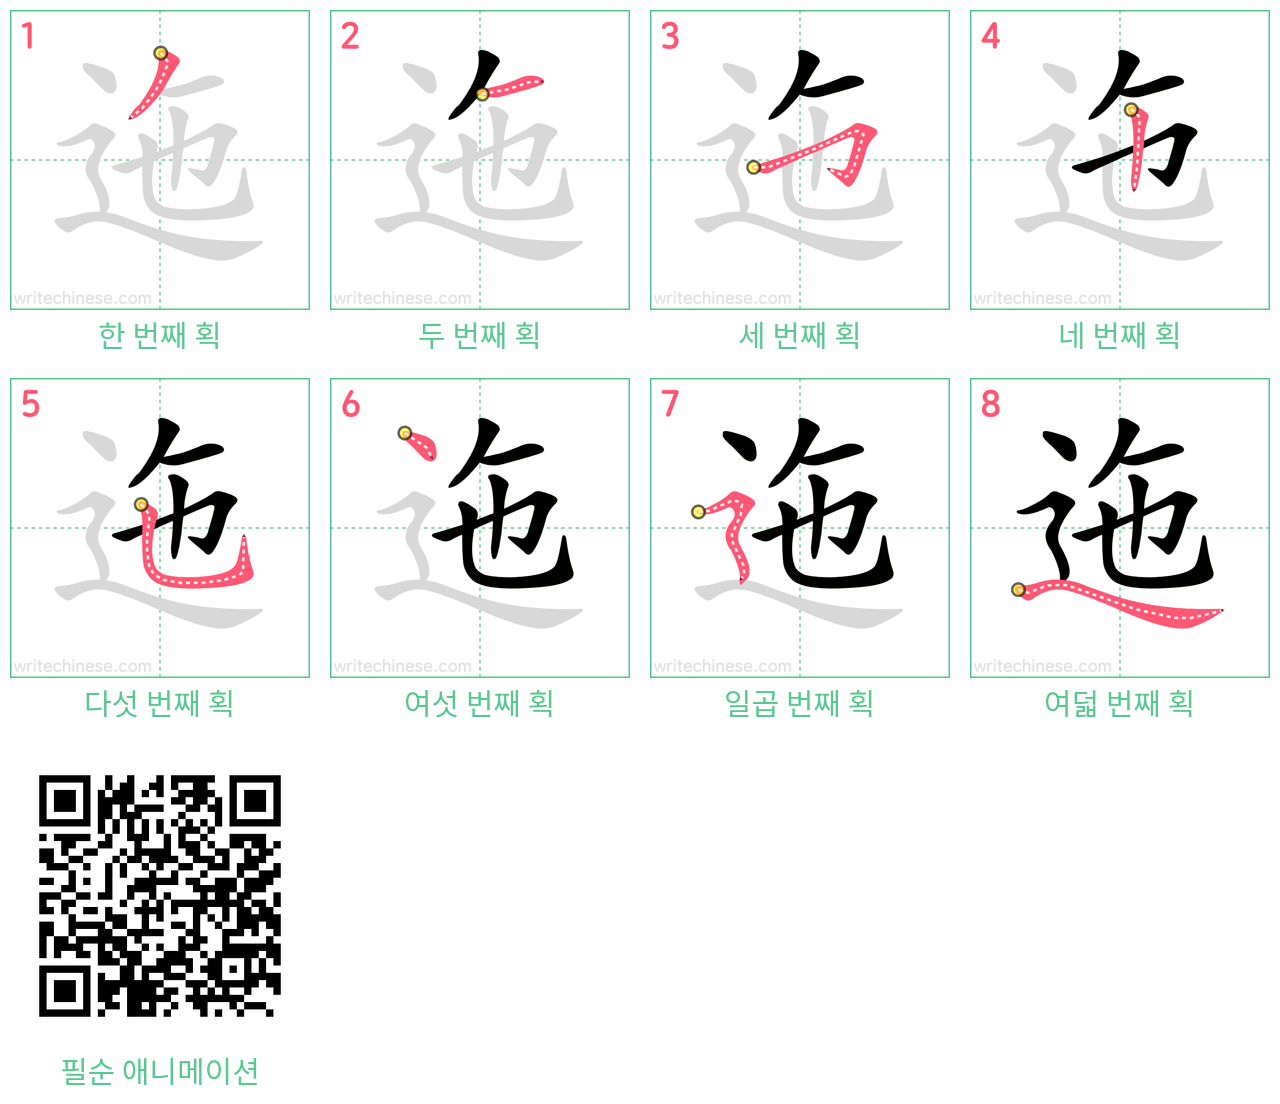 迤 step-by-step stroke order diagrams